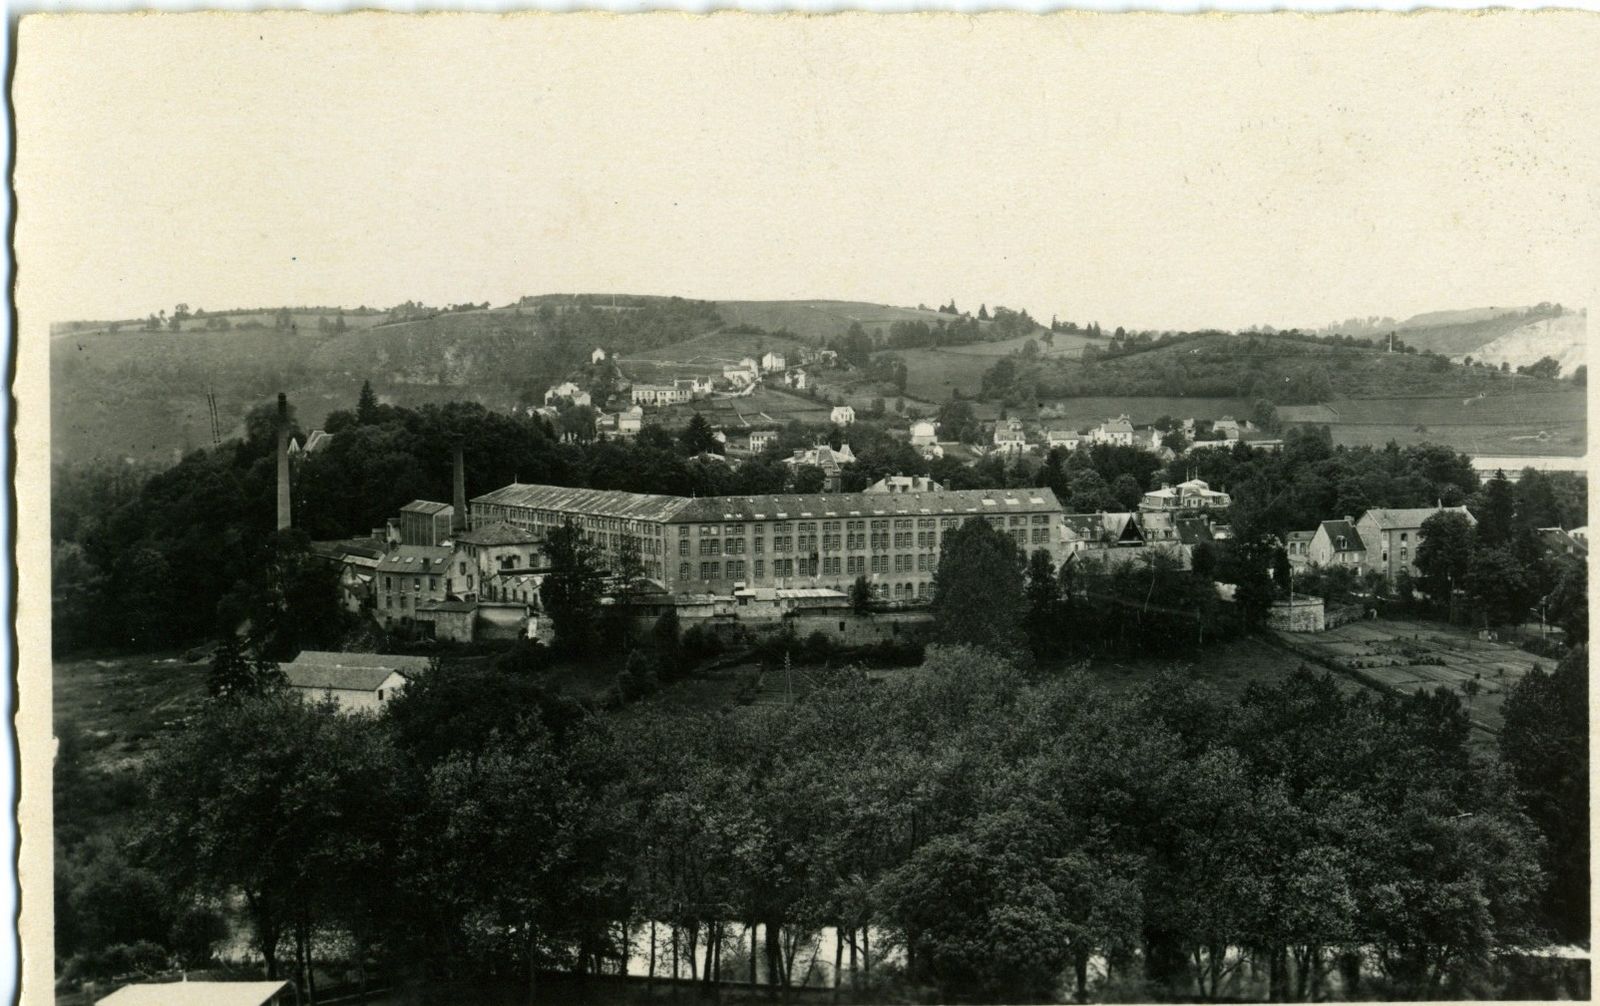 Carte postale de la manufacture Sallandrouze, au début du 20e siècle (AD 23), avec ses bâtiments des années 1880-1890, détruits dans les bombardements de juillet 1944